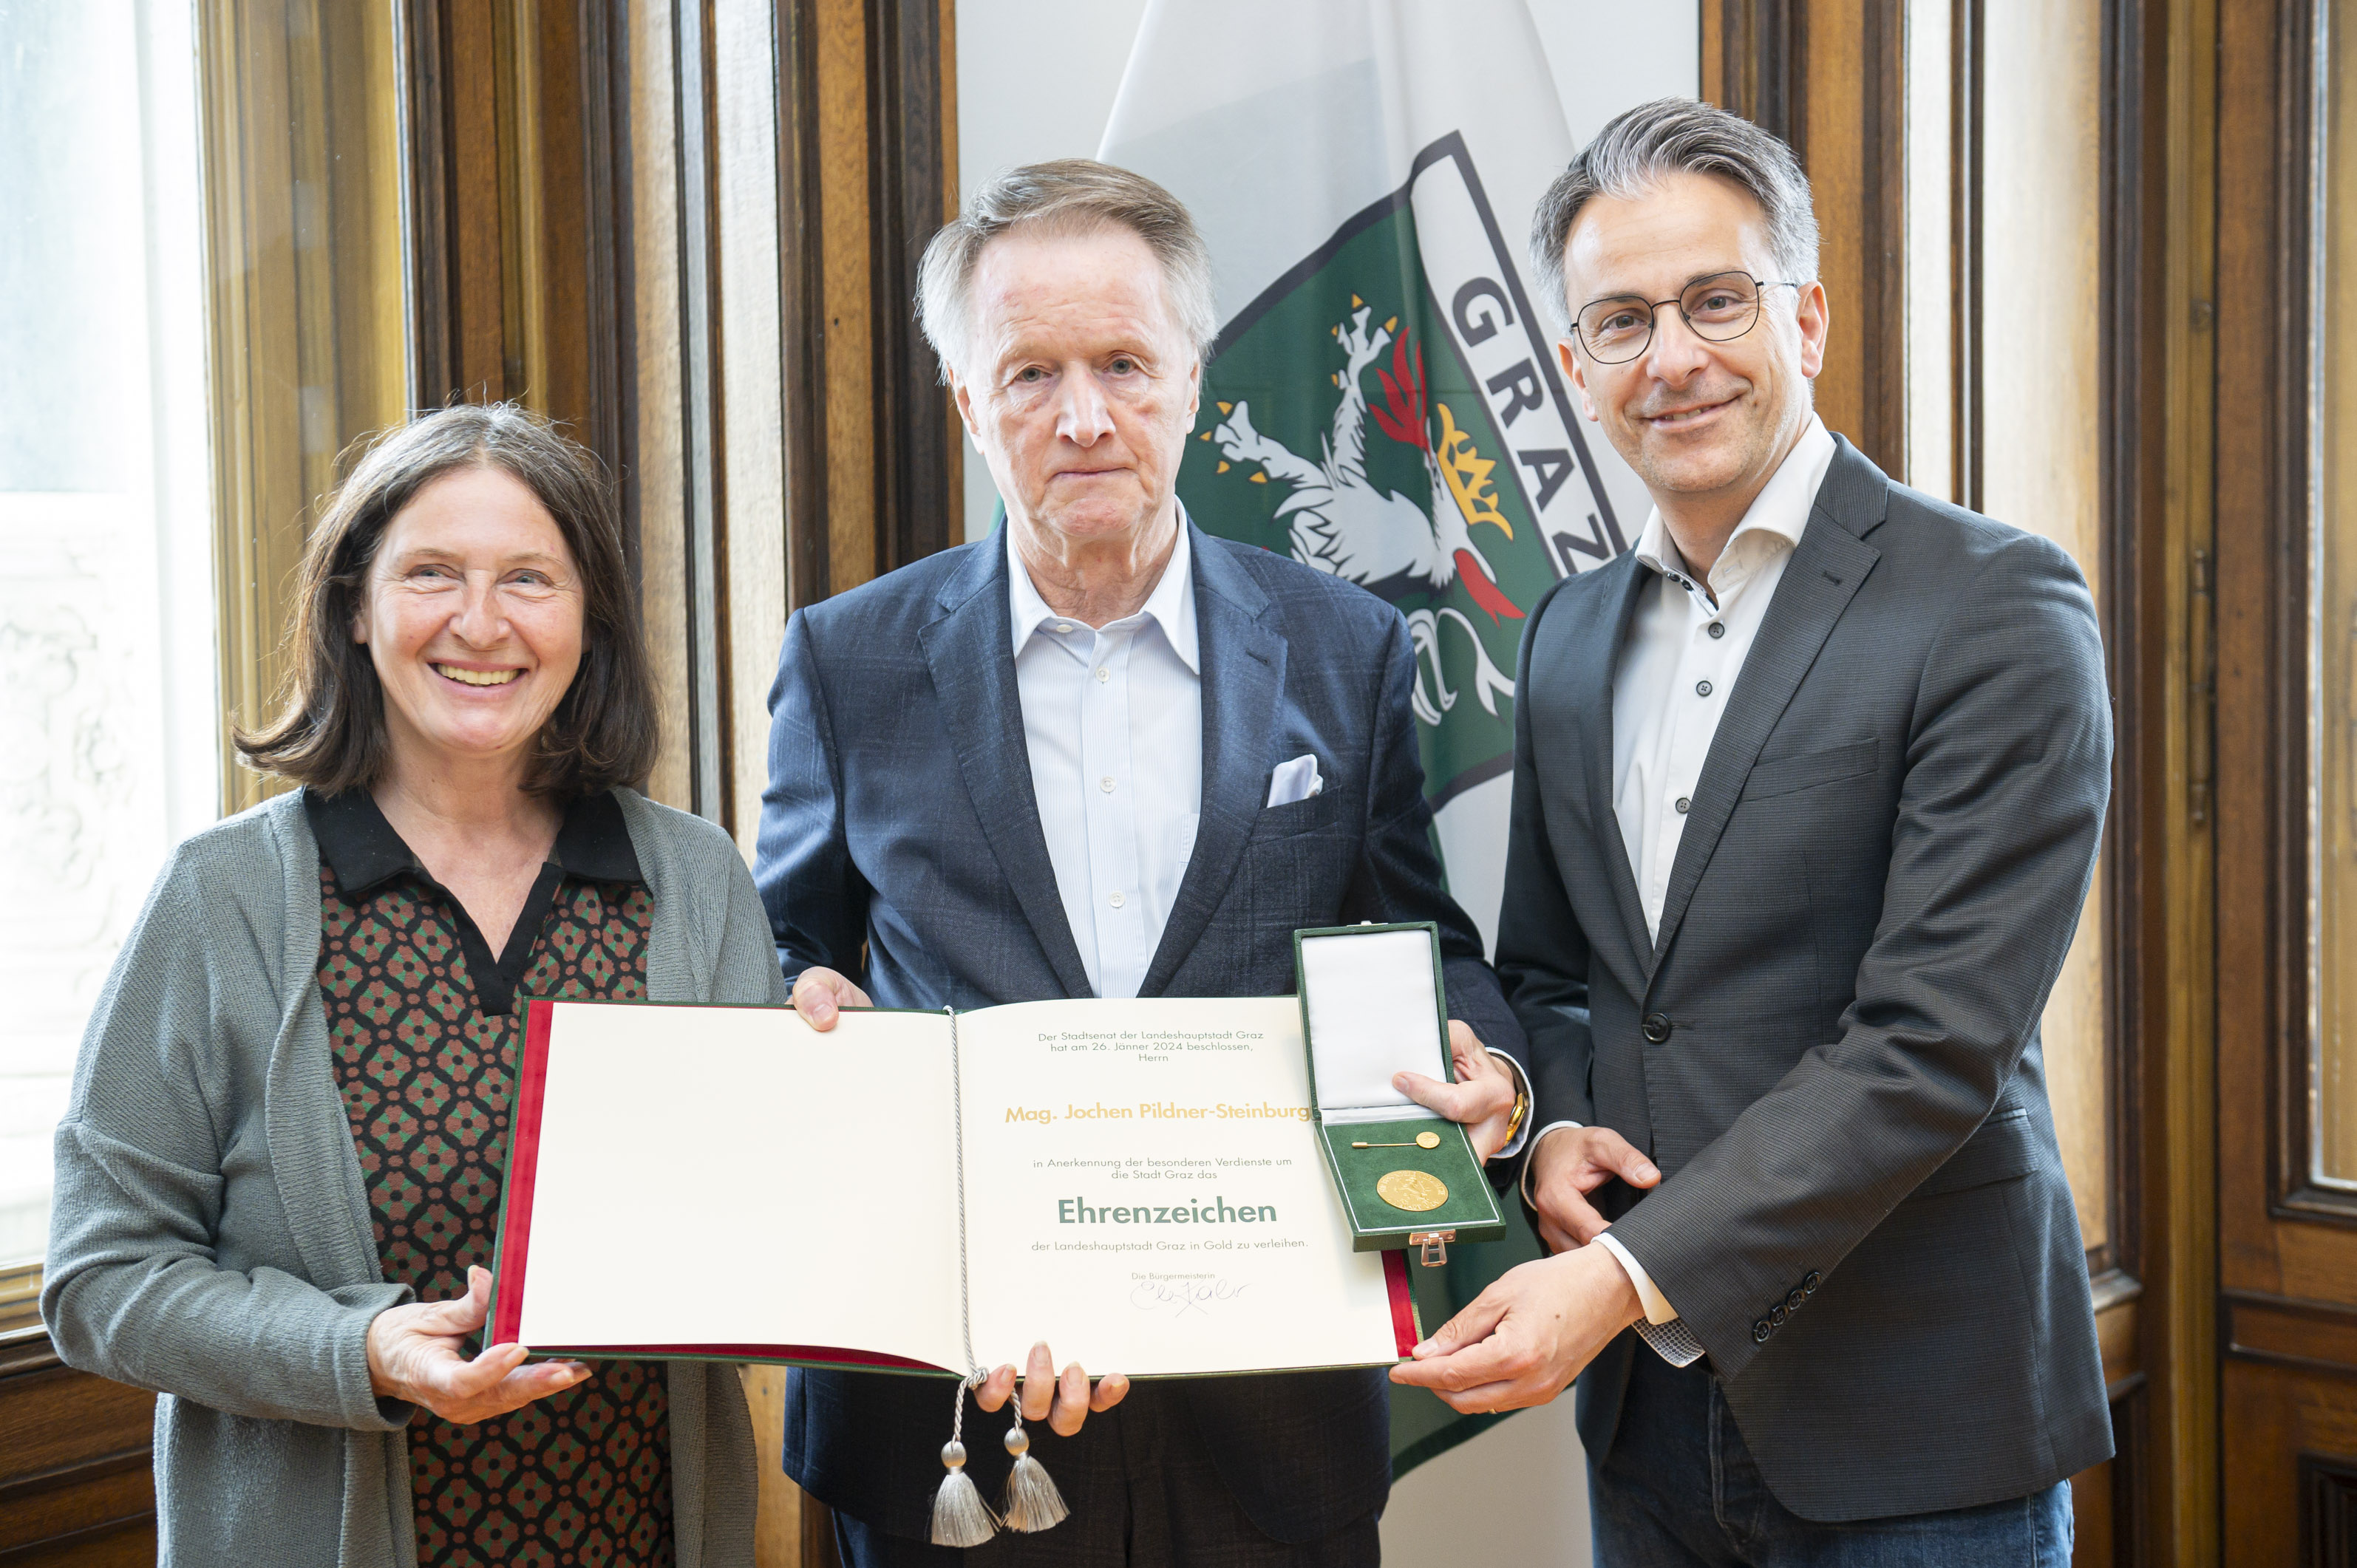 Jochen Pildner-Steinburg mit Bürgermeisterin Elke Kahr und Stadtrat Kurt Hohensinner